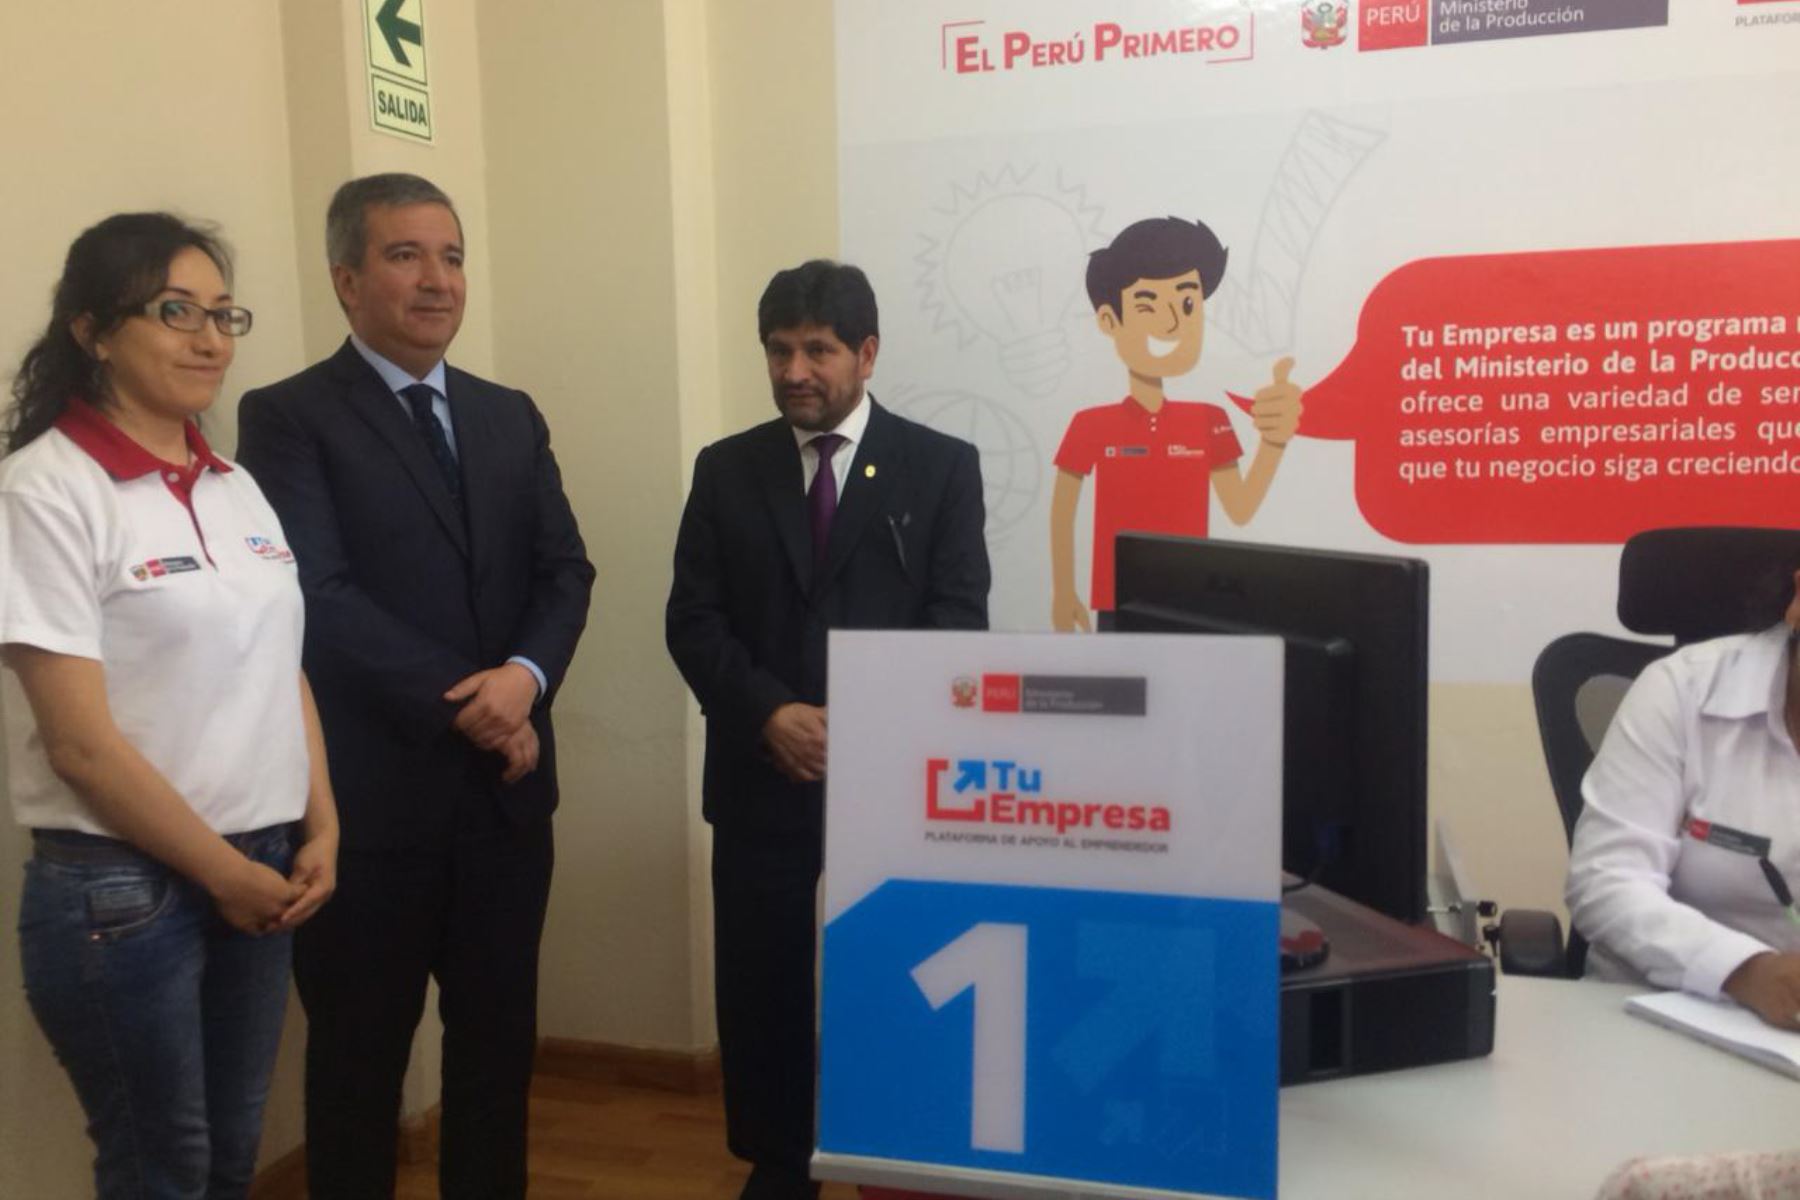 El ministro de la Producción, Raúl Pérez-Reyes, inauguró Centro de Desarrollo Empresarial Tu Empresa en la Universidad Nacional de San Agustín (UNSA) de Arequipa.